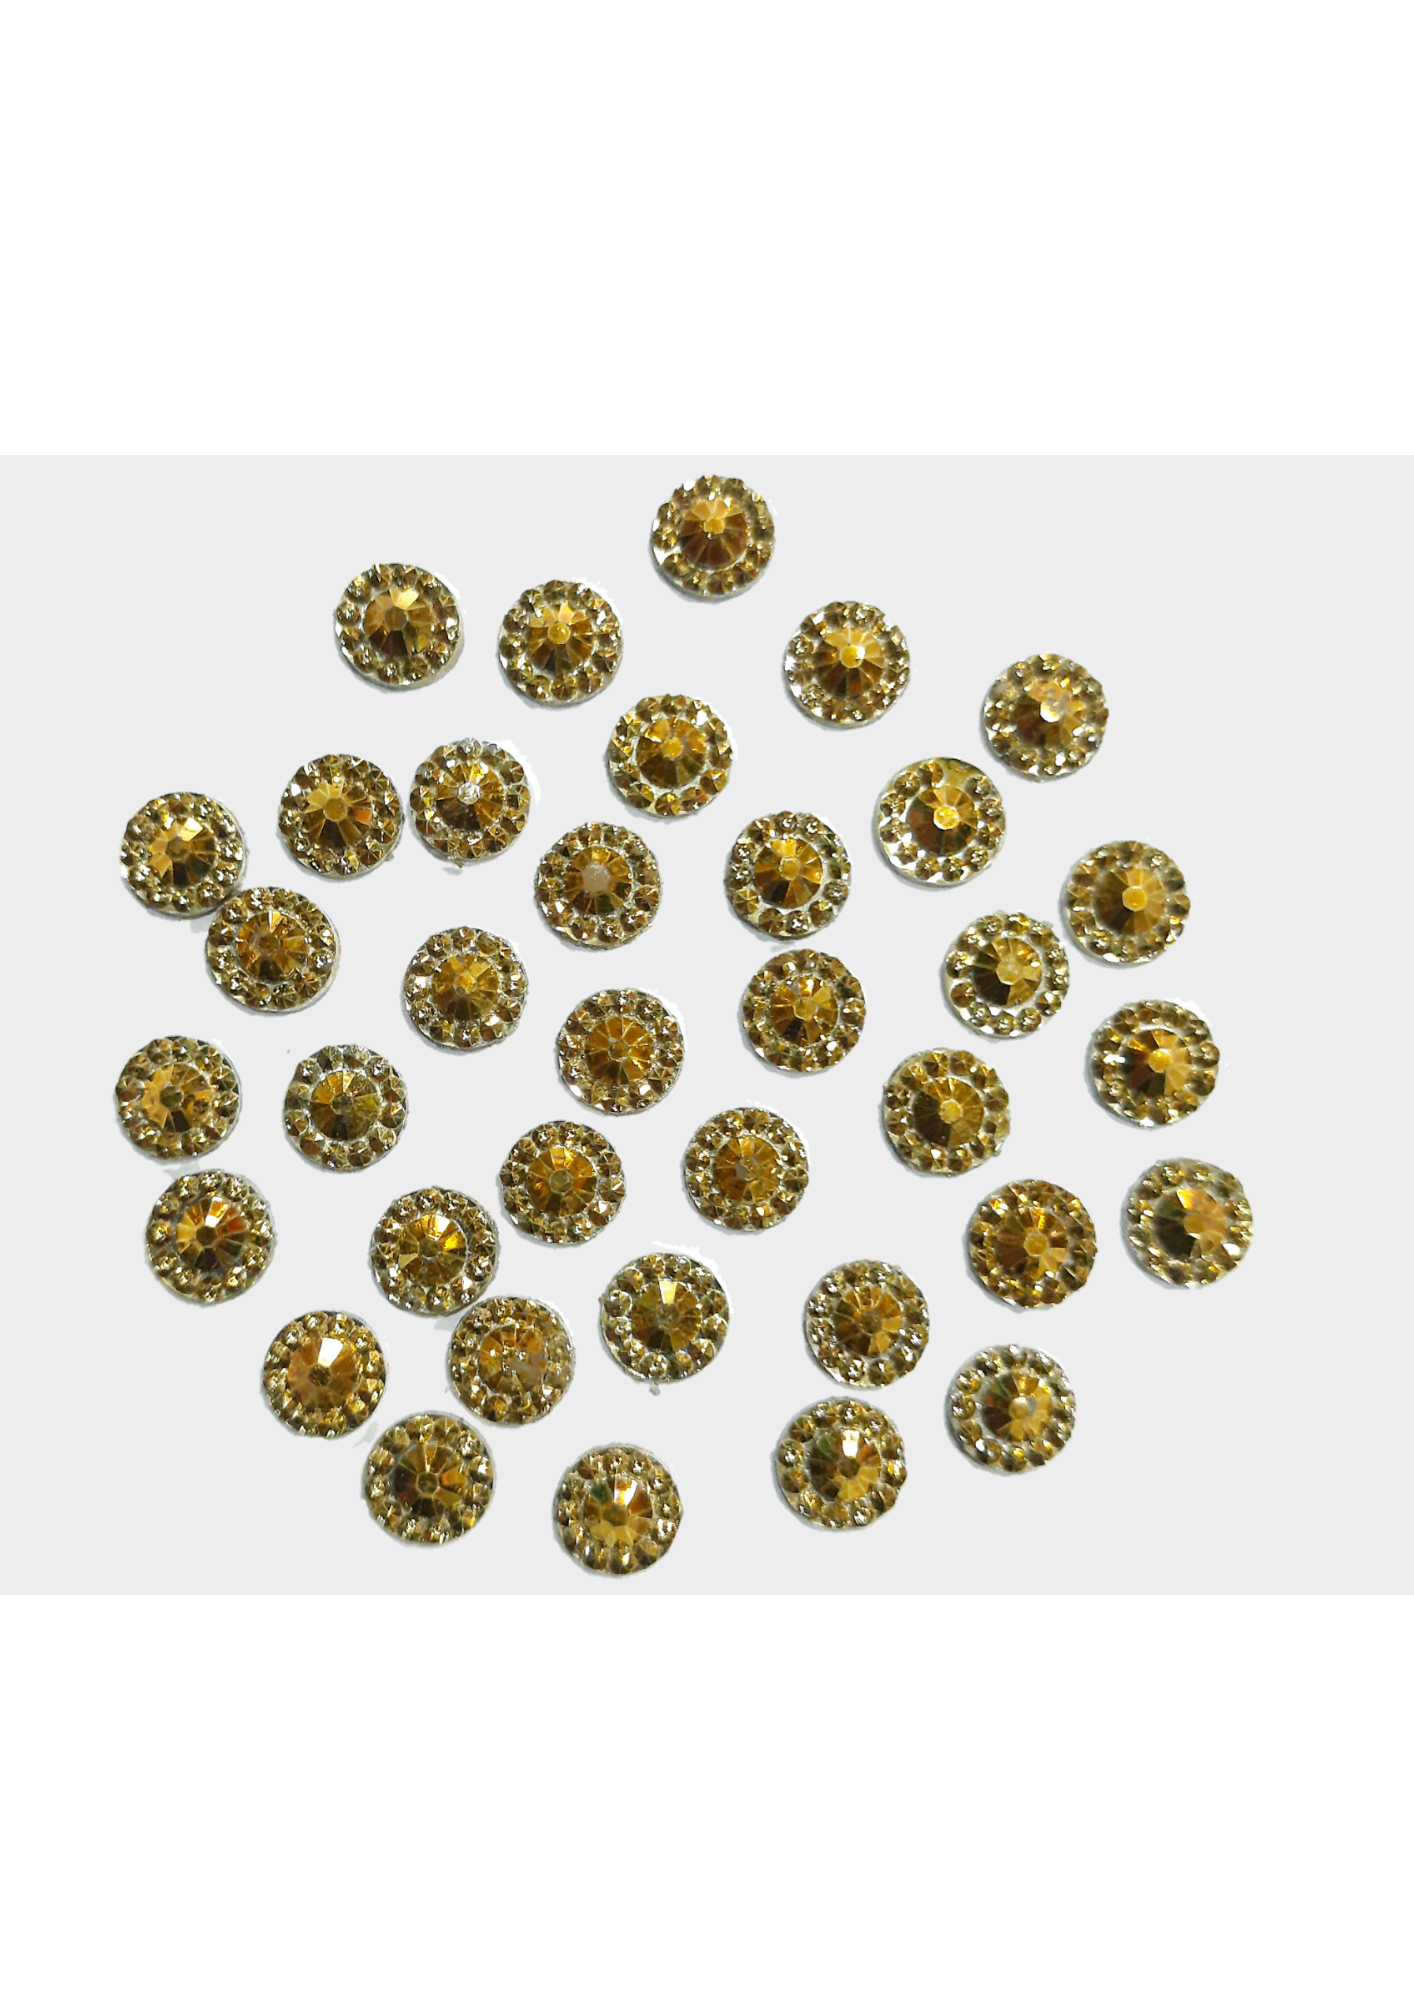 Sequins - shine diamond cut golden 5mm